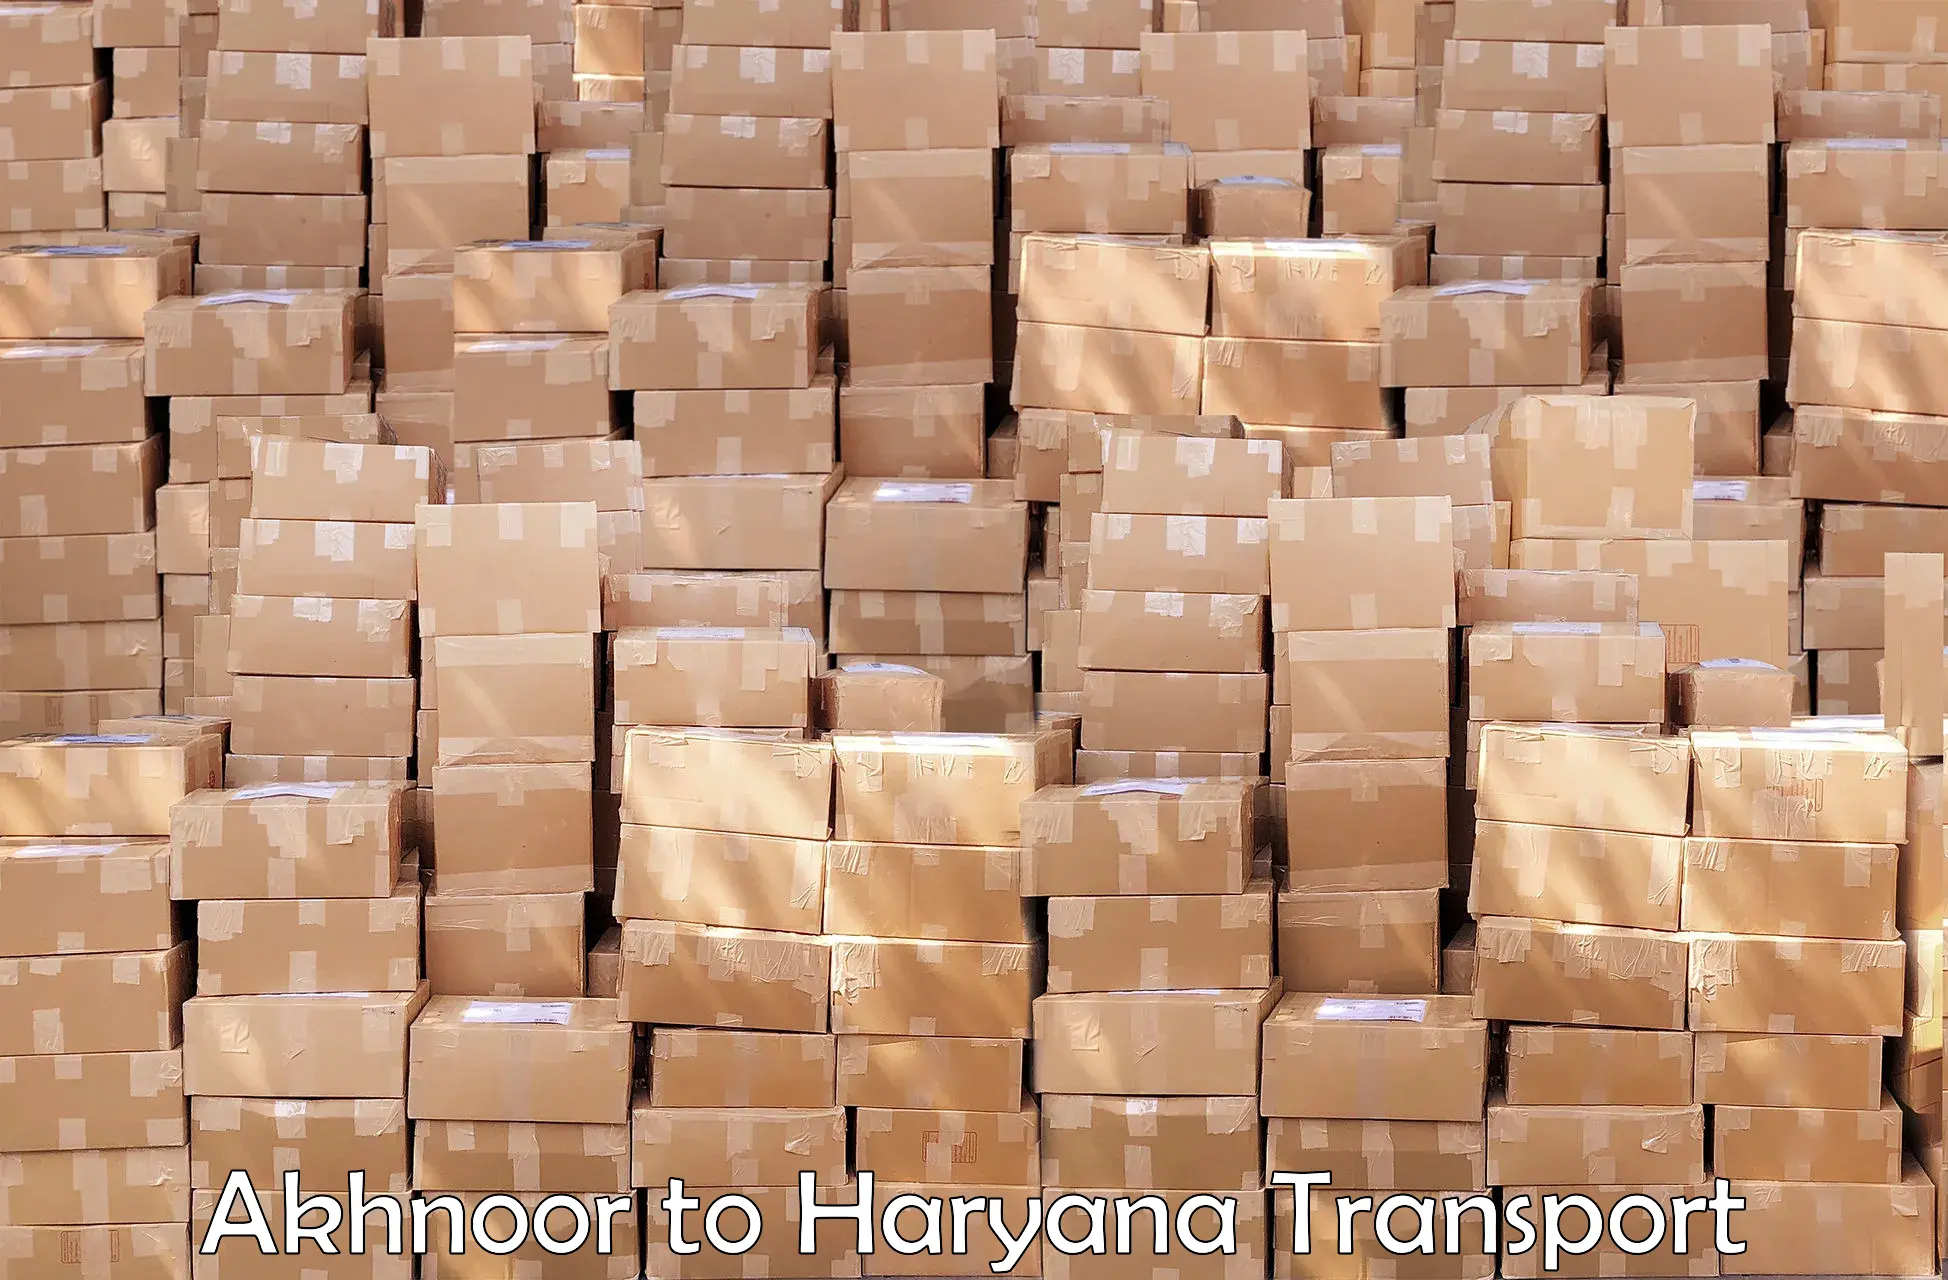 Two wheeler parcel service Akhnoor to Karnal